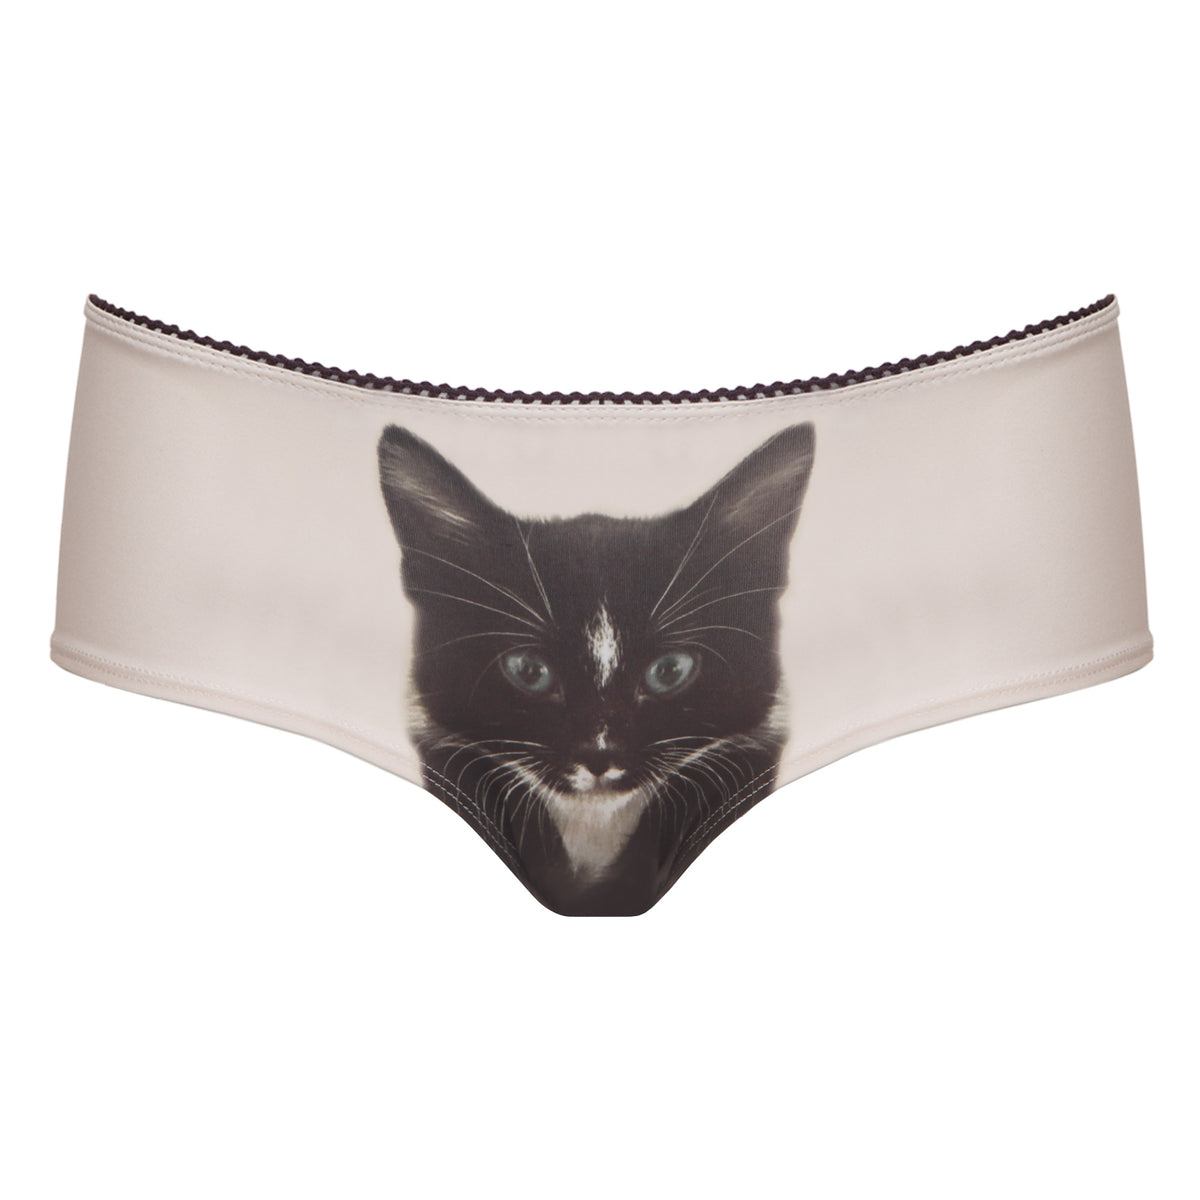 Women's Underwear Cat Print, Women's Panties Print Cats